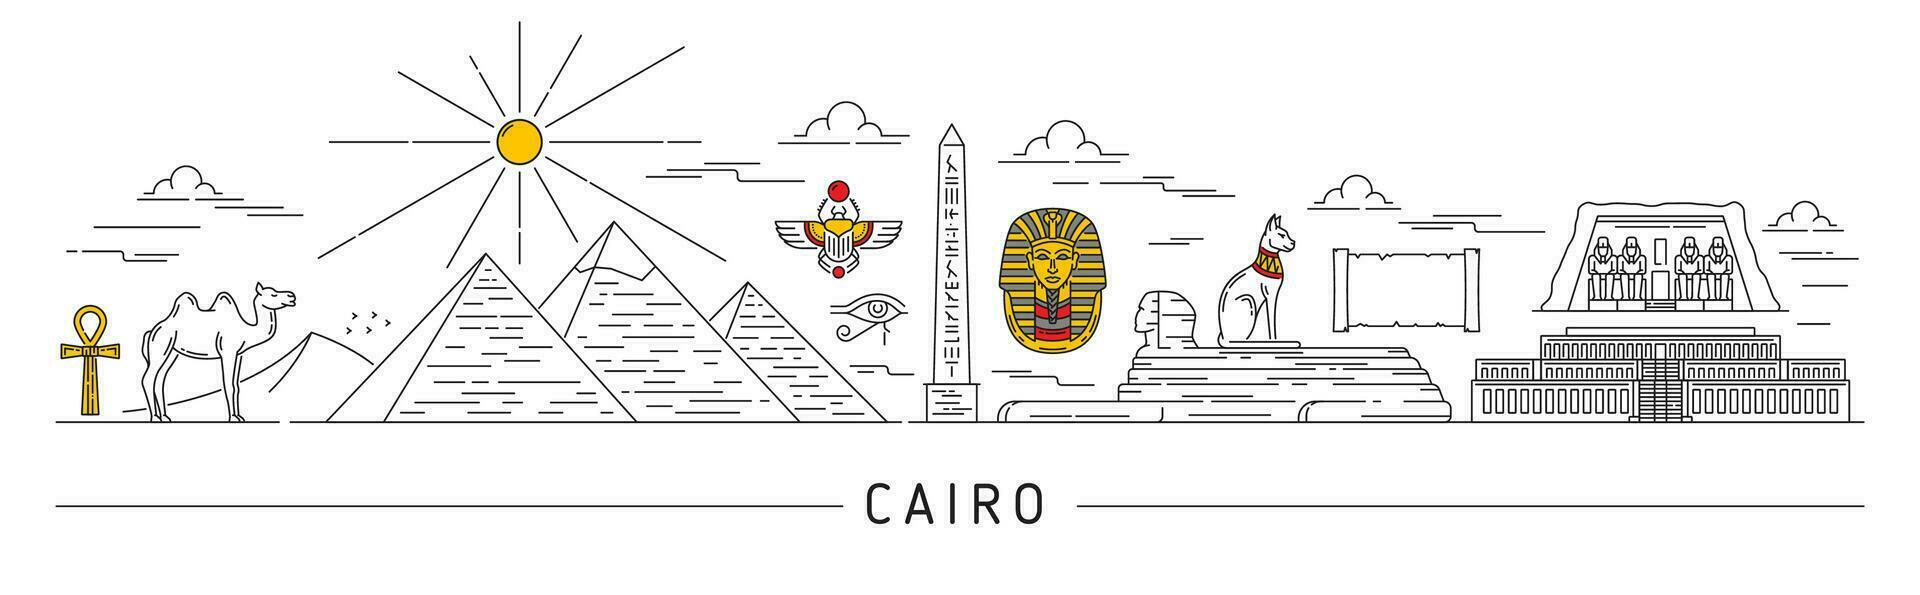 Egipto silueta, El Cairo, egipcio viaje puntos de referencia vector